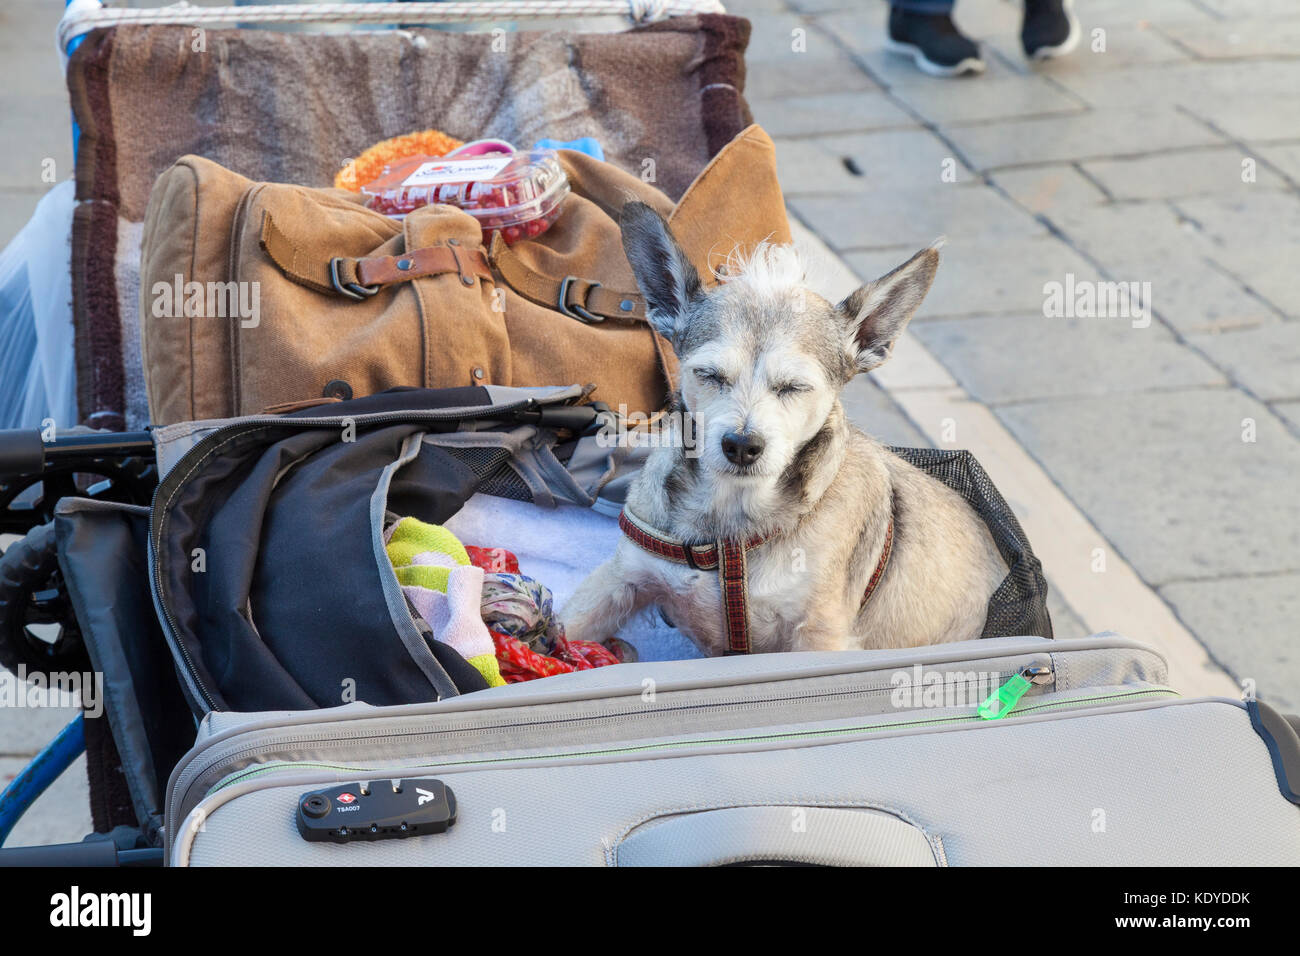 Ruhigen älteren Hund dösend unter den Gepäck auf einem Träger trolley Koffer zu einem Hotel, da es ein Tourist im Urlaub begleitet Stockfoto